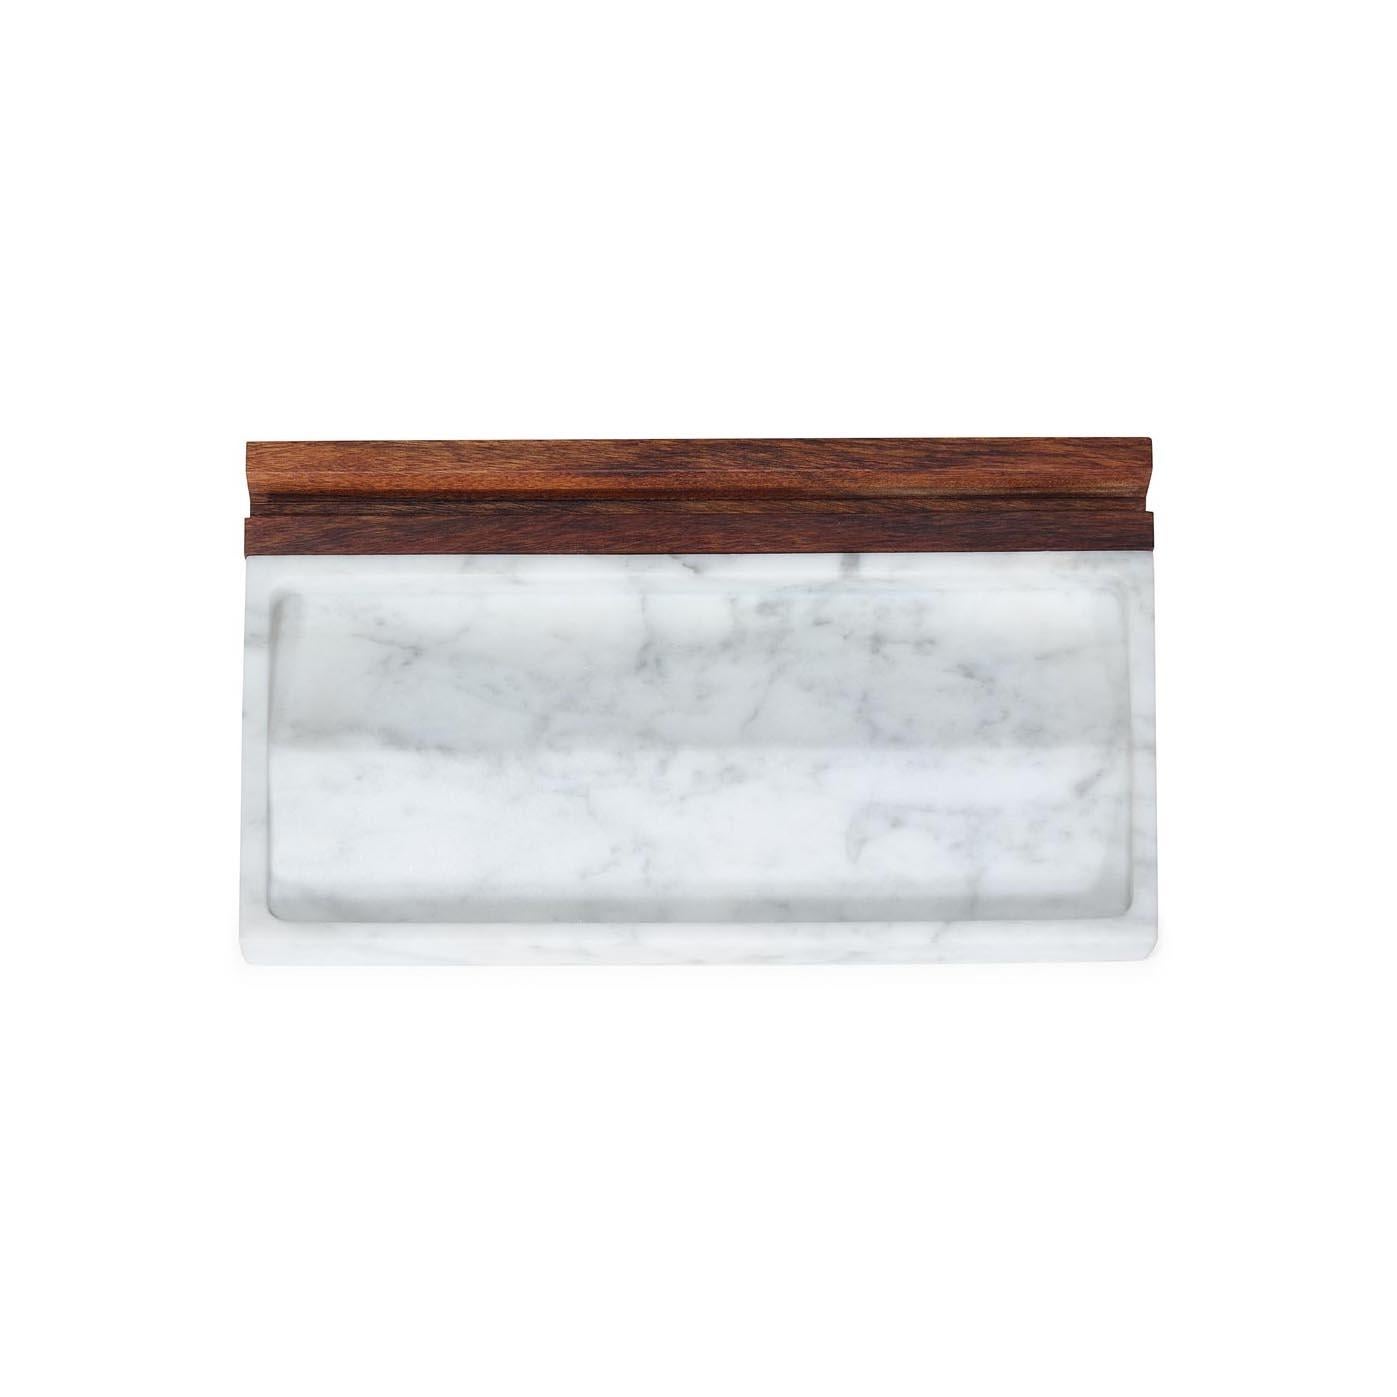 Contemporary Tech Tray - Office tray - Carrara Marble + Walnut For Sale